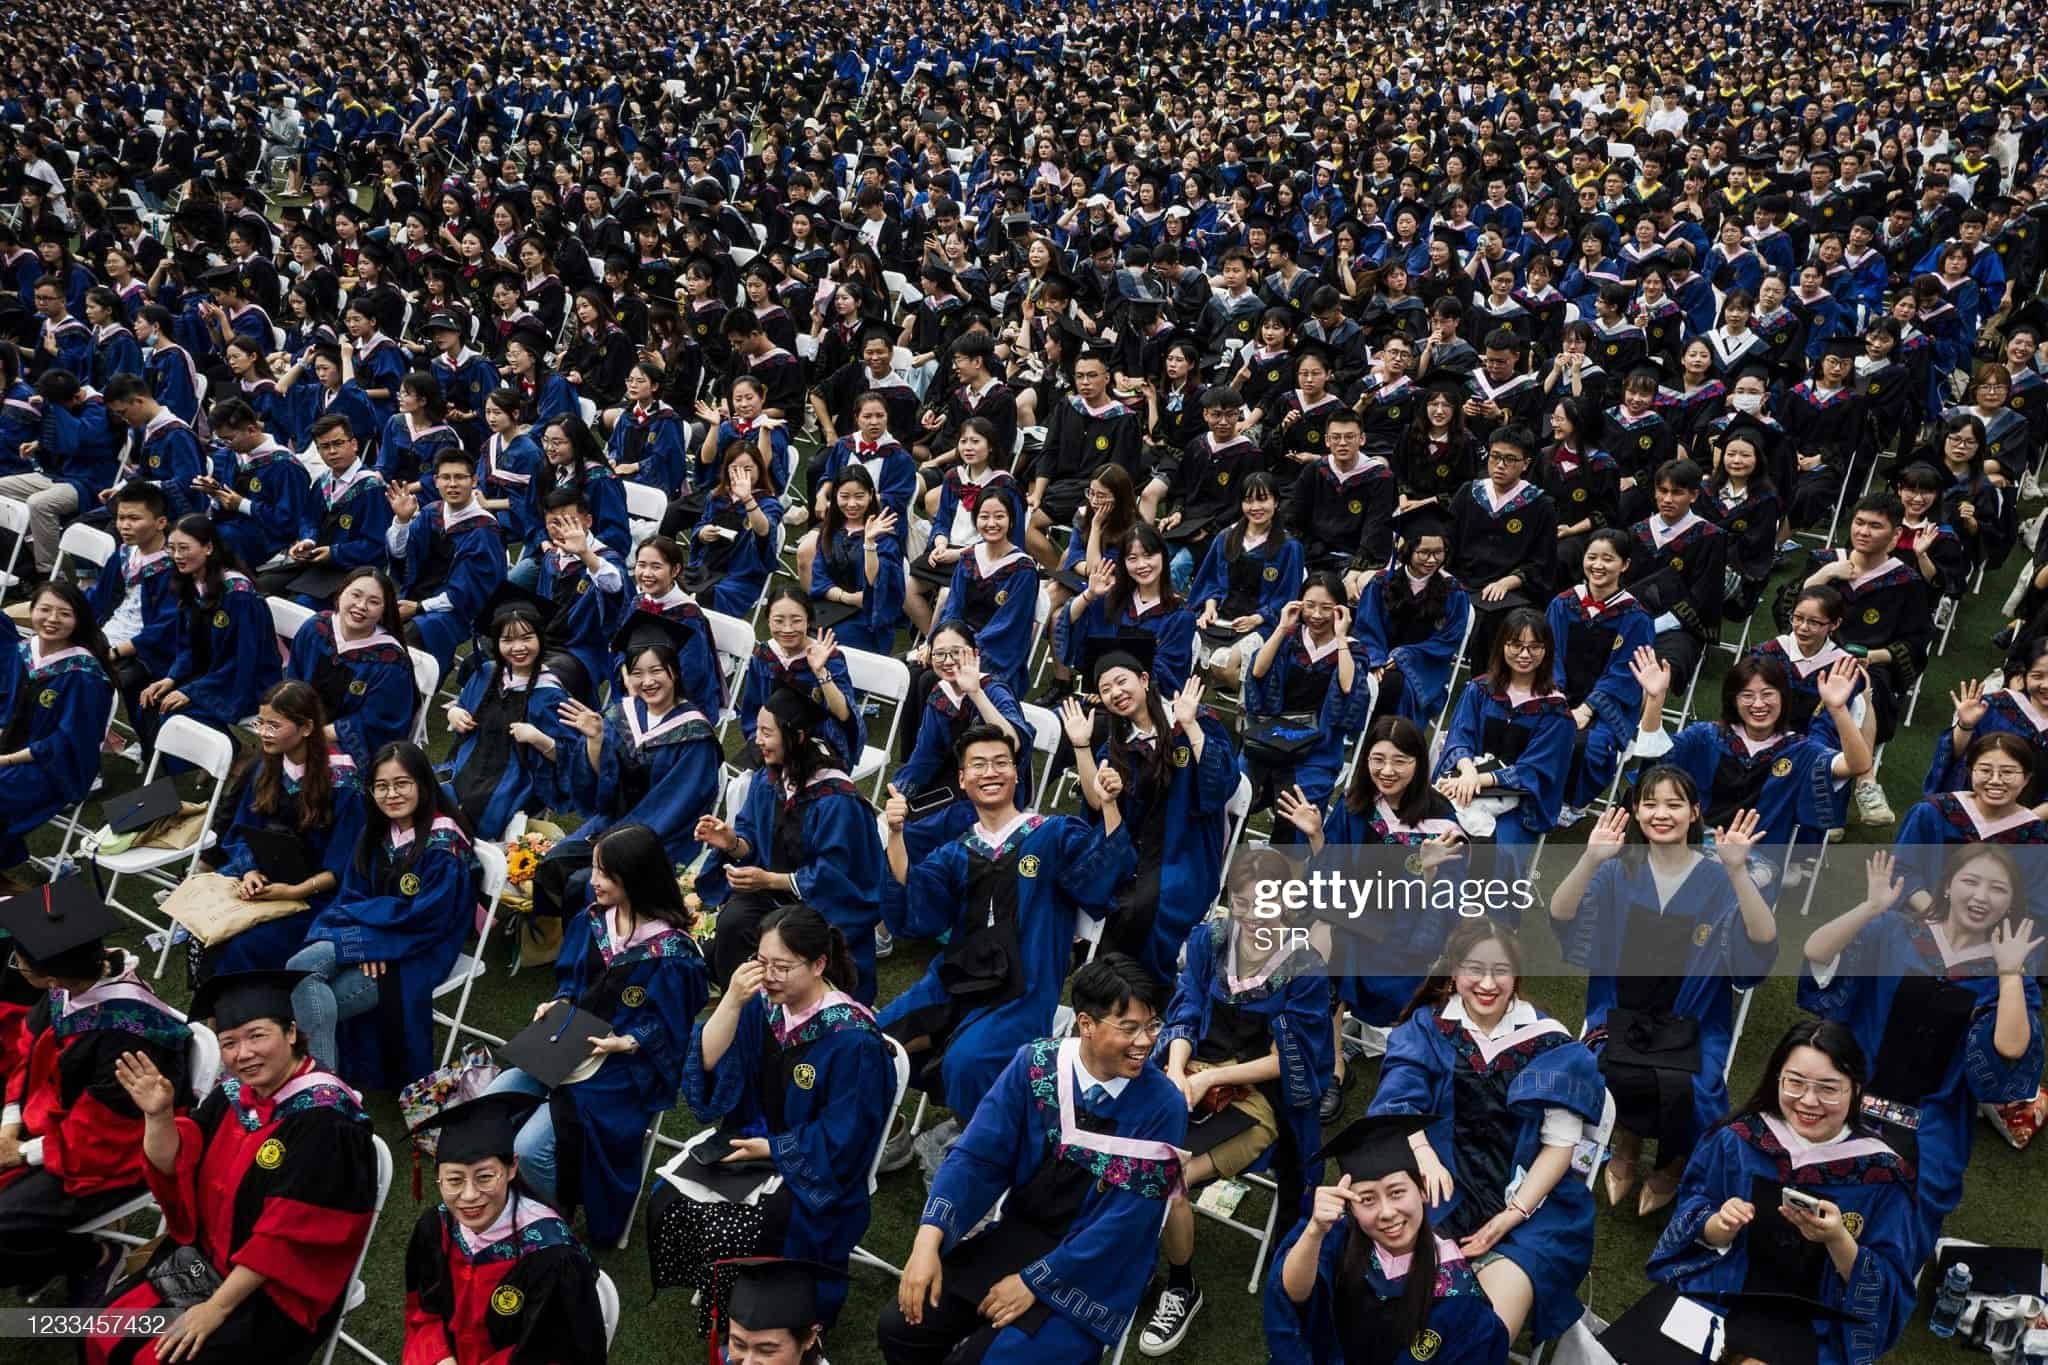 Hơn 11.000 sinh viên dự lễ tốt nghiệp tập thể ở thành phố Vũ Hán, tỉnh Hồ Bắc, Trung Quốc hôm 13/6. Ảnh: Getty